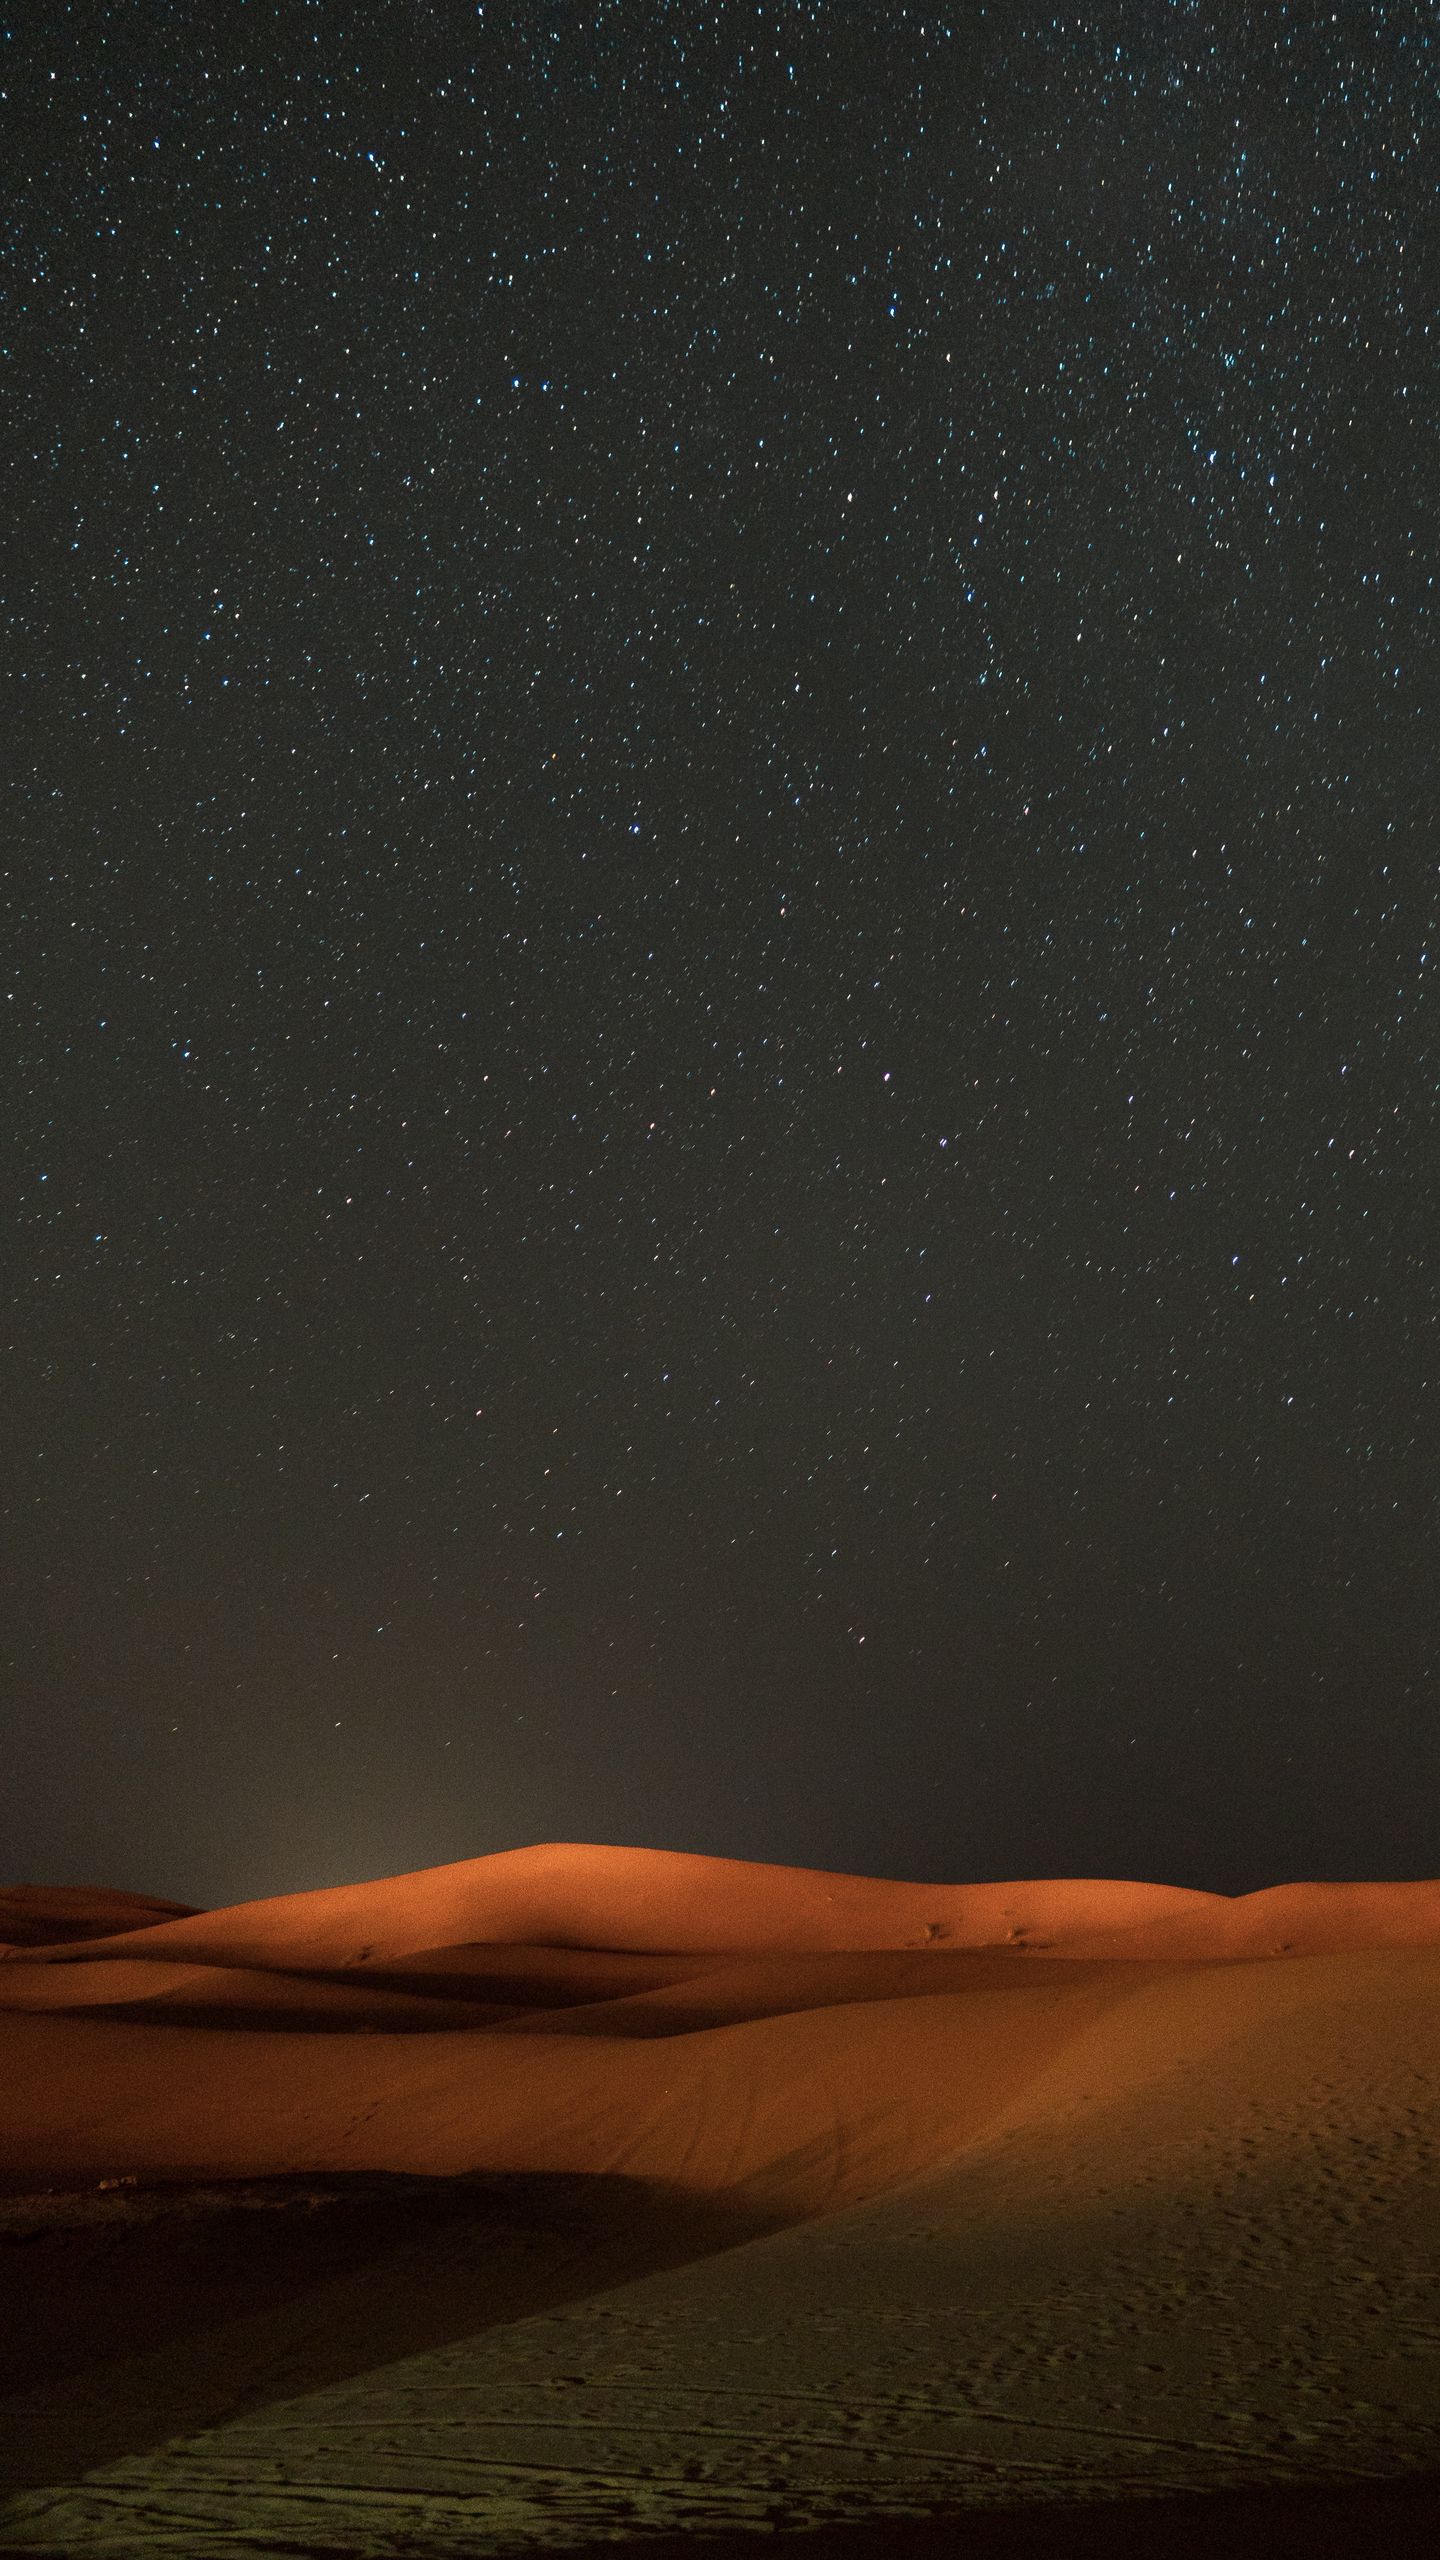 Download wallpaper 1440x2560 desert night starry sky dunes